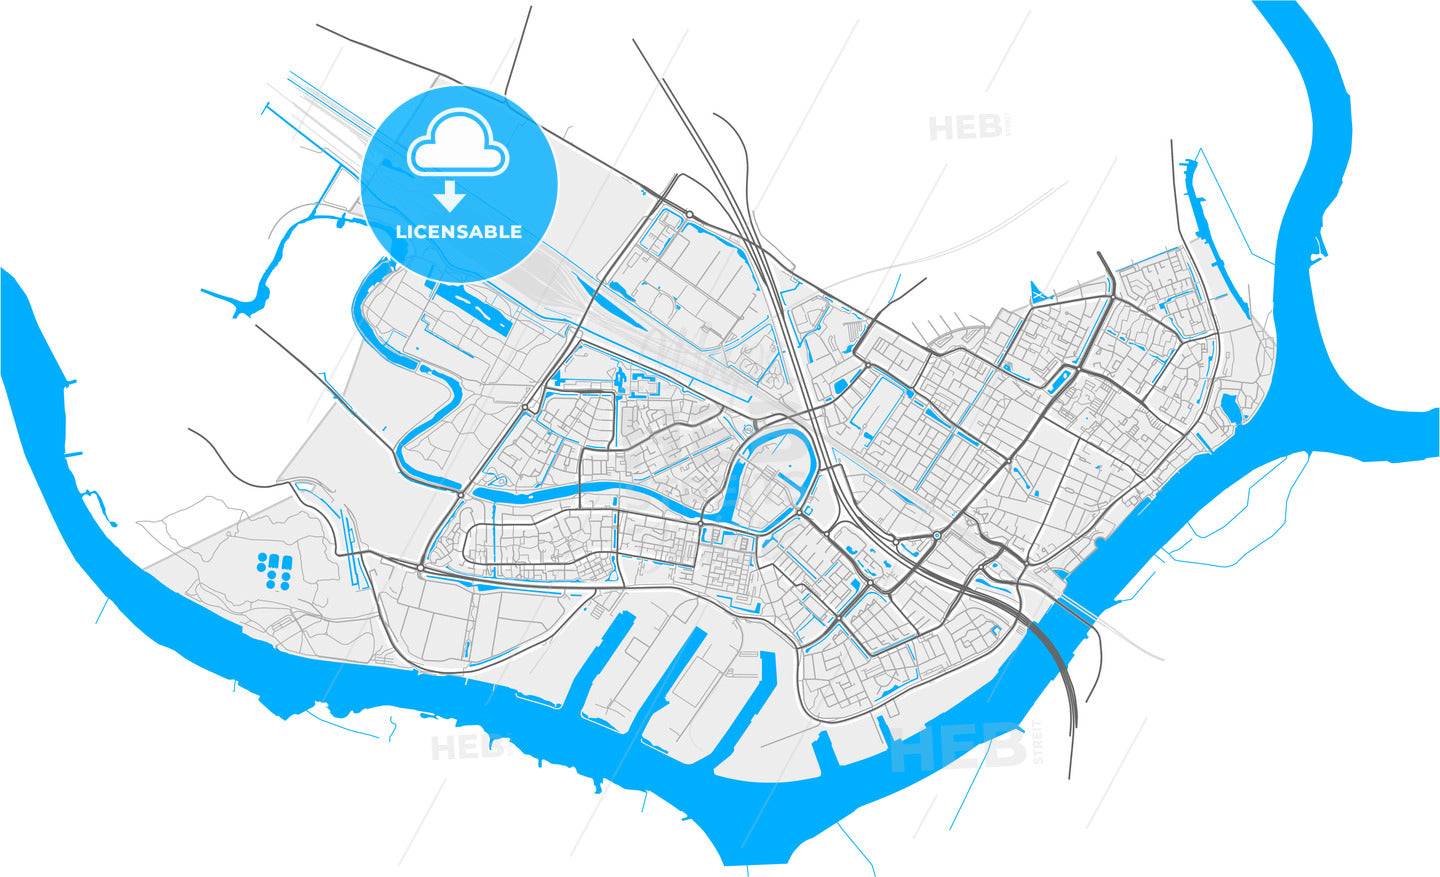 Zwijndrecht, South Holland, Netherlands, high quality vector map